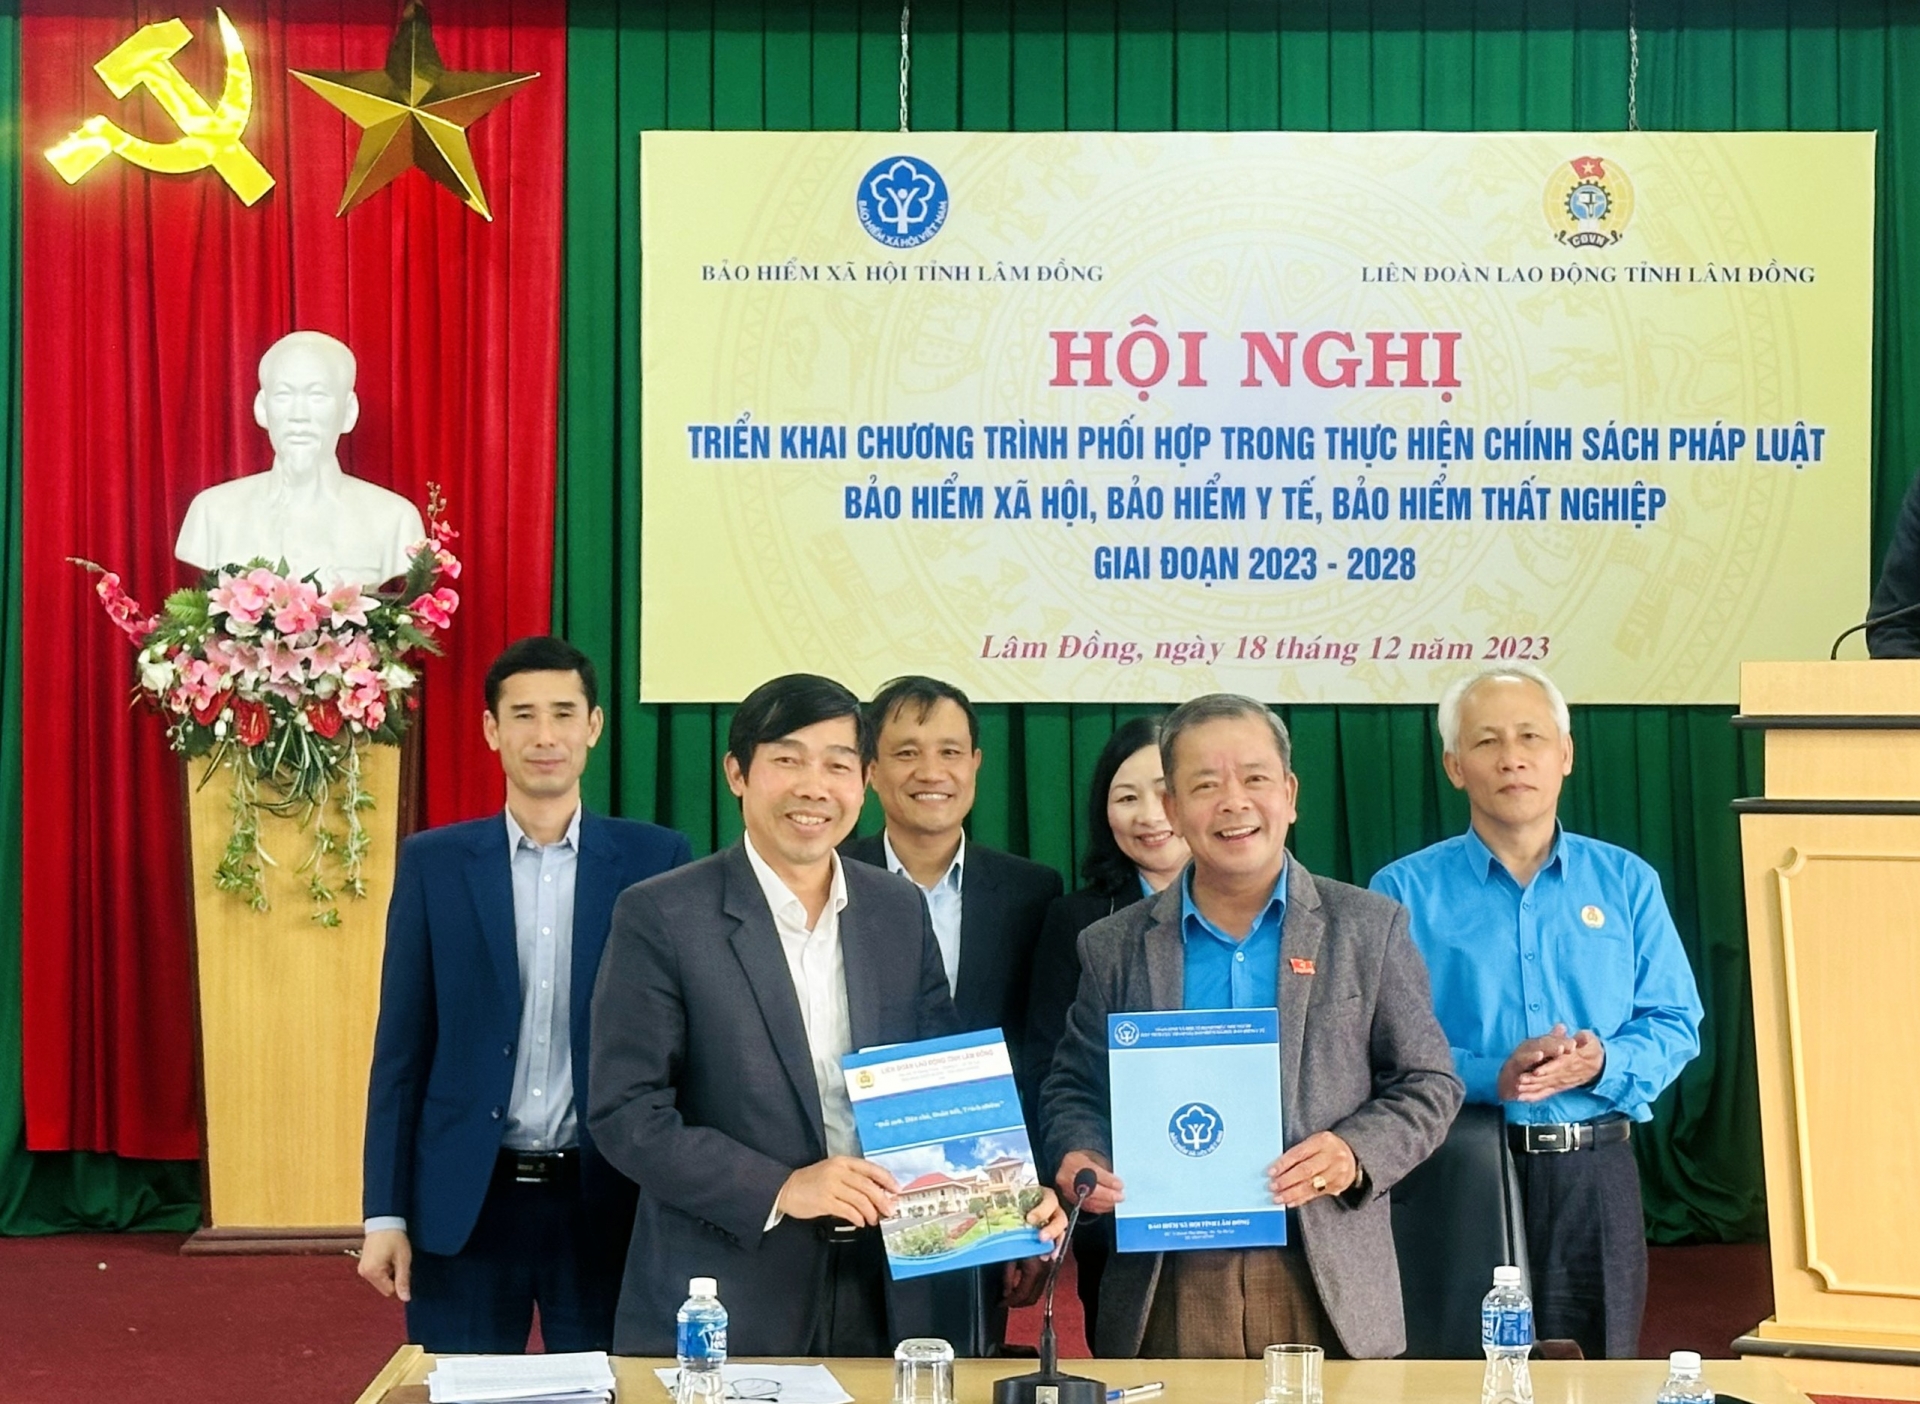 •	Lãnh đạo Bảo hiểm Xã hội tỉnh Lâm Đồng và Liên đoàn Lao động tỉnh ký kết chương trình phối hợp giai đoạn 2023 -2028

